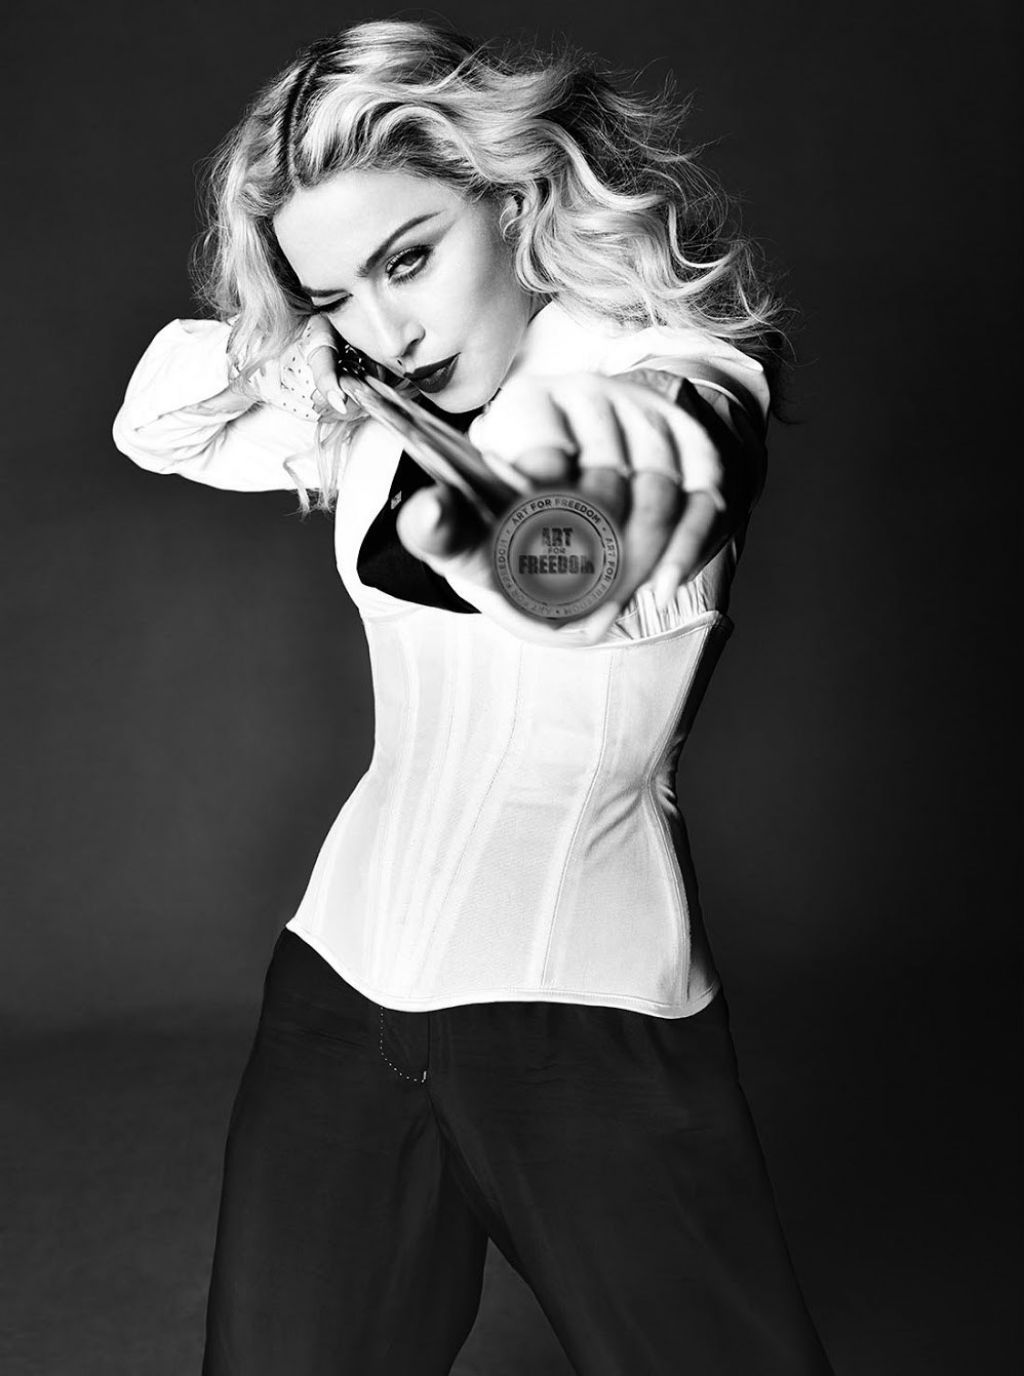 O mundo precisa de mais Madonnas